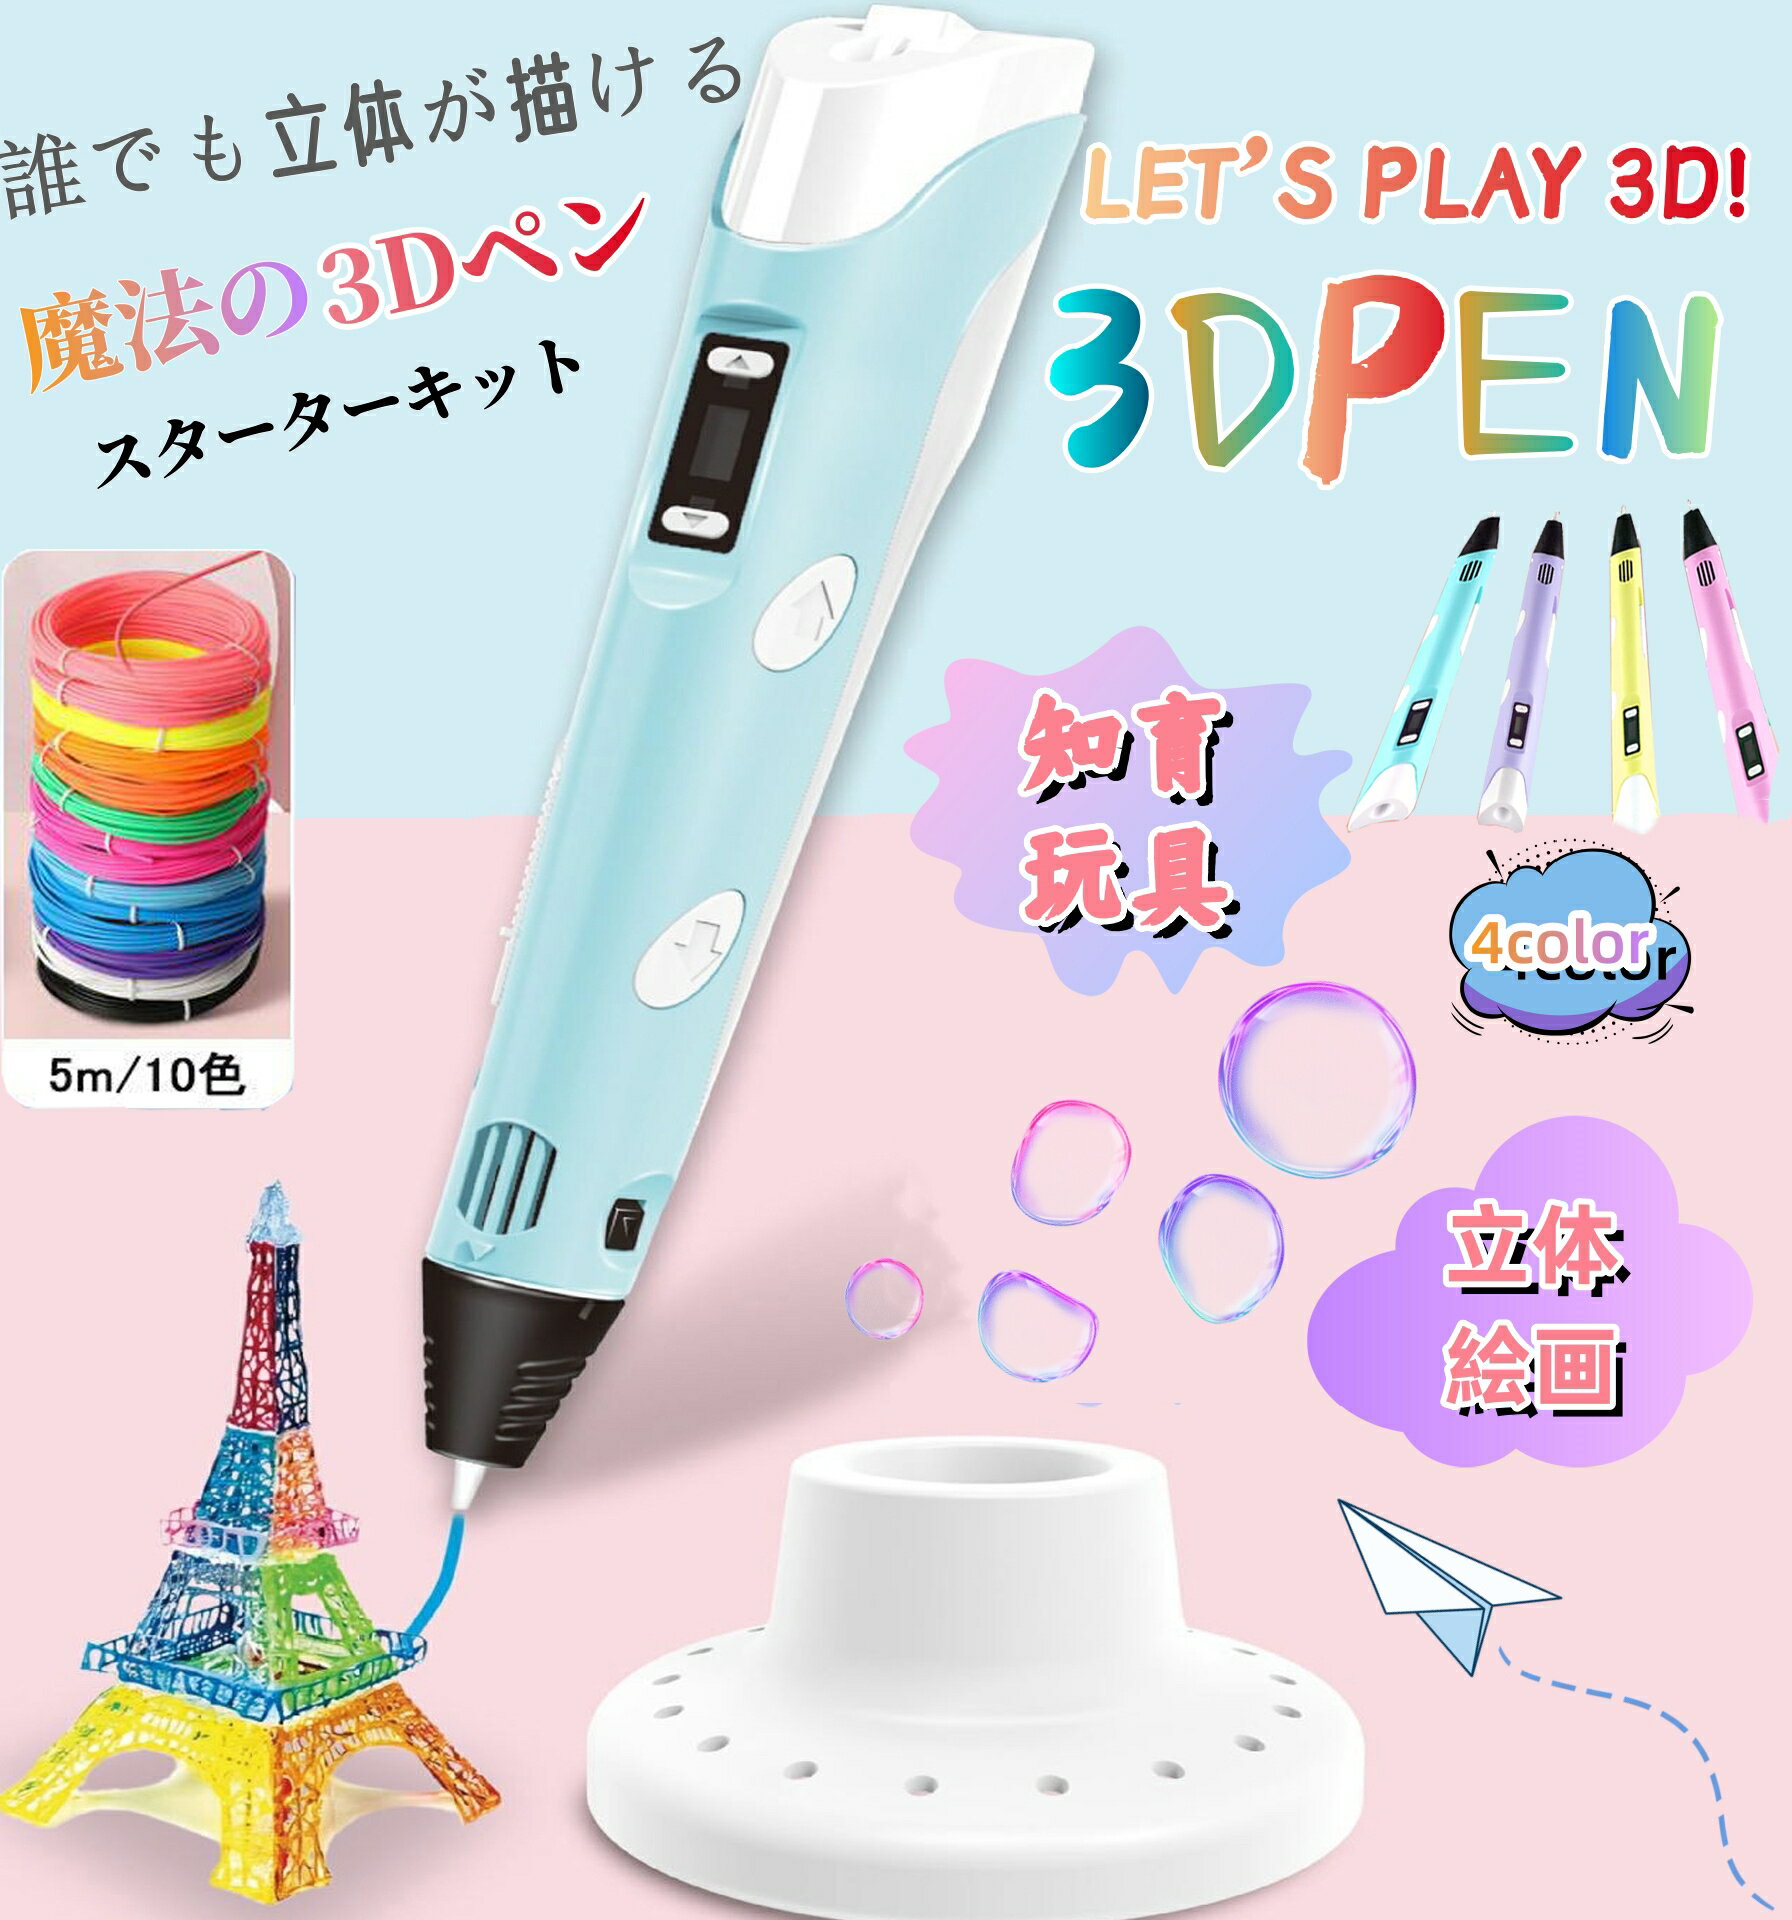 3Dペン 子供 フィラメント セット 立体絵画 5m×10色 3Dアートペン DIY 手作り 想像力 創造力 USB 子供おもちゃ 知育玩具 LCD画面表示 スビート調整可能 立体的 手軽 子供 大人 誕生日 プレゼント 送料無料